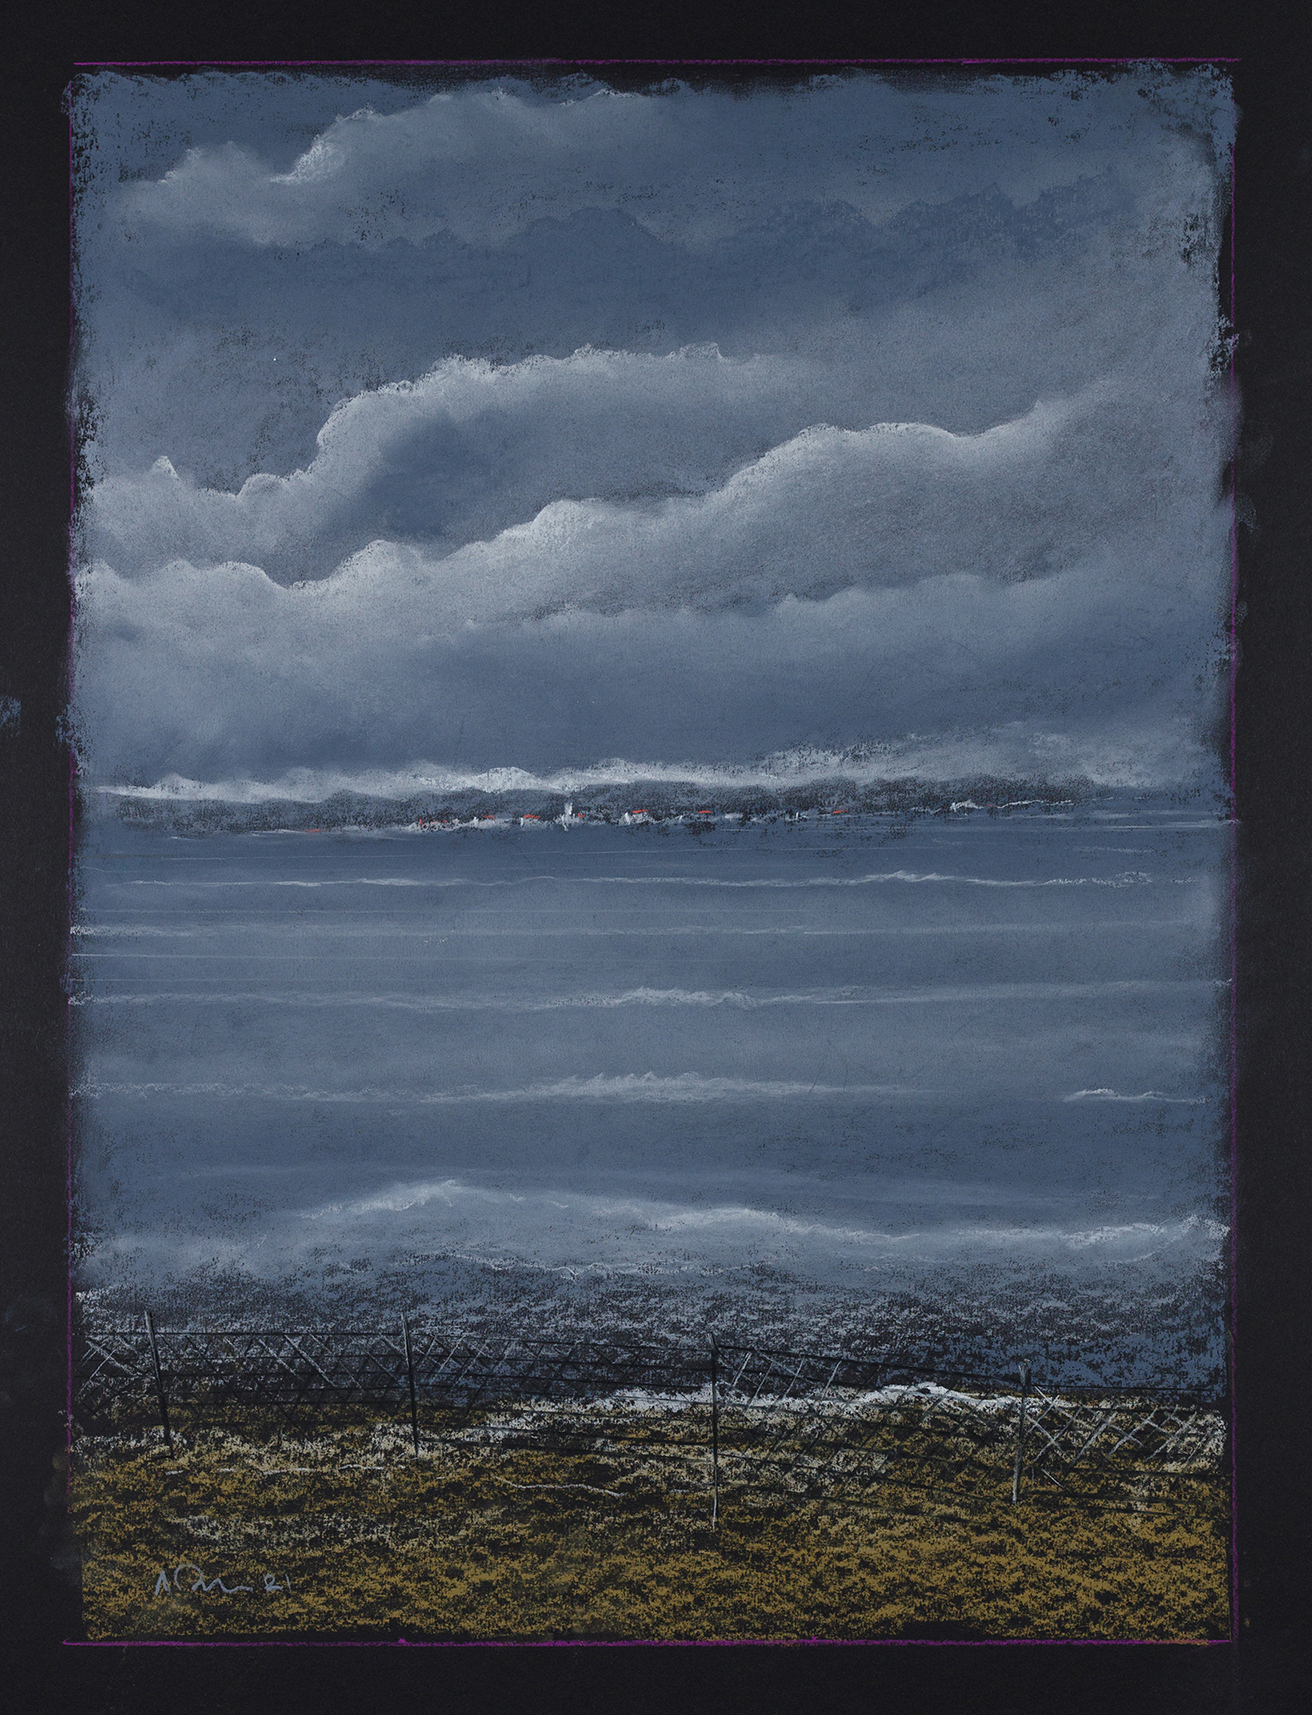 Σύννεφο που ξεστράτισε και σκόνταψε στο φως: Έκθεση του Λουδοβίκου των Ανωγείων στην γκαλερί Genesis